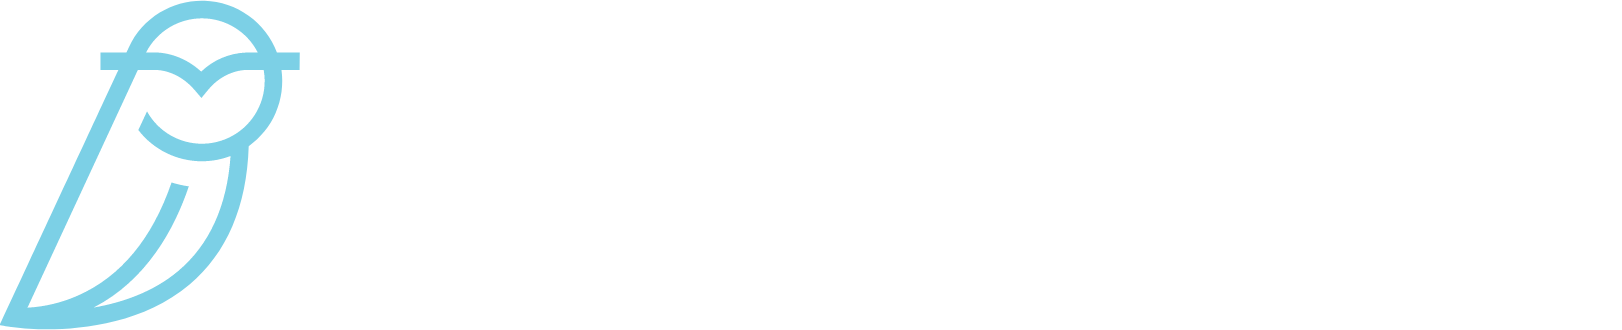 Blue Owl Capital logo large for dark backgrounds (transparent PNG)